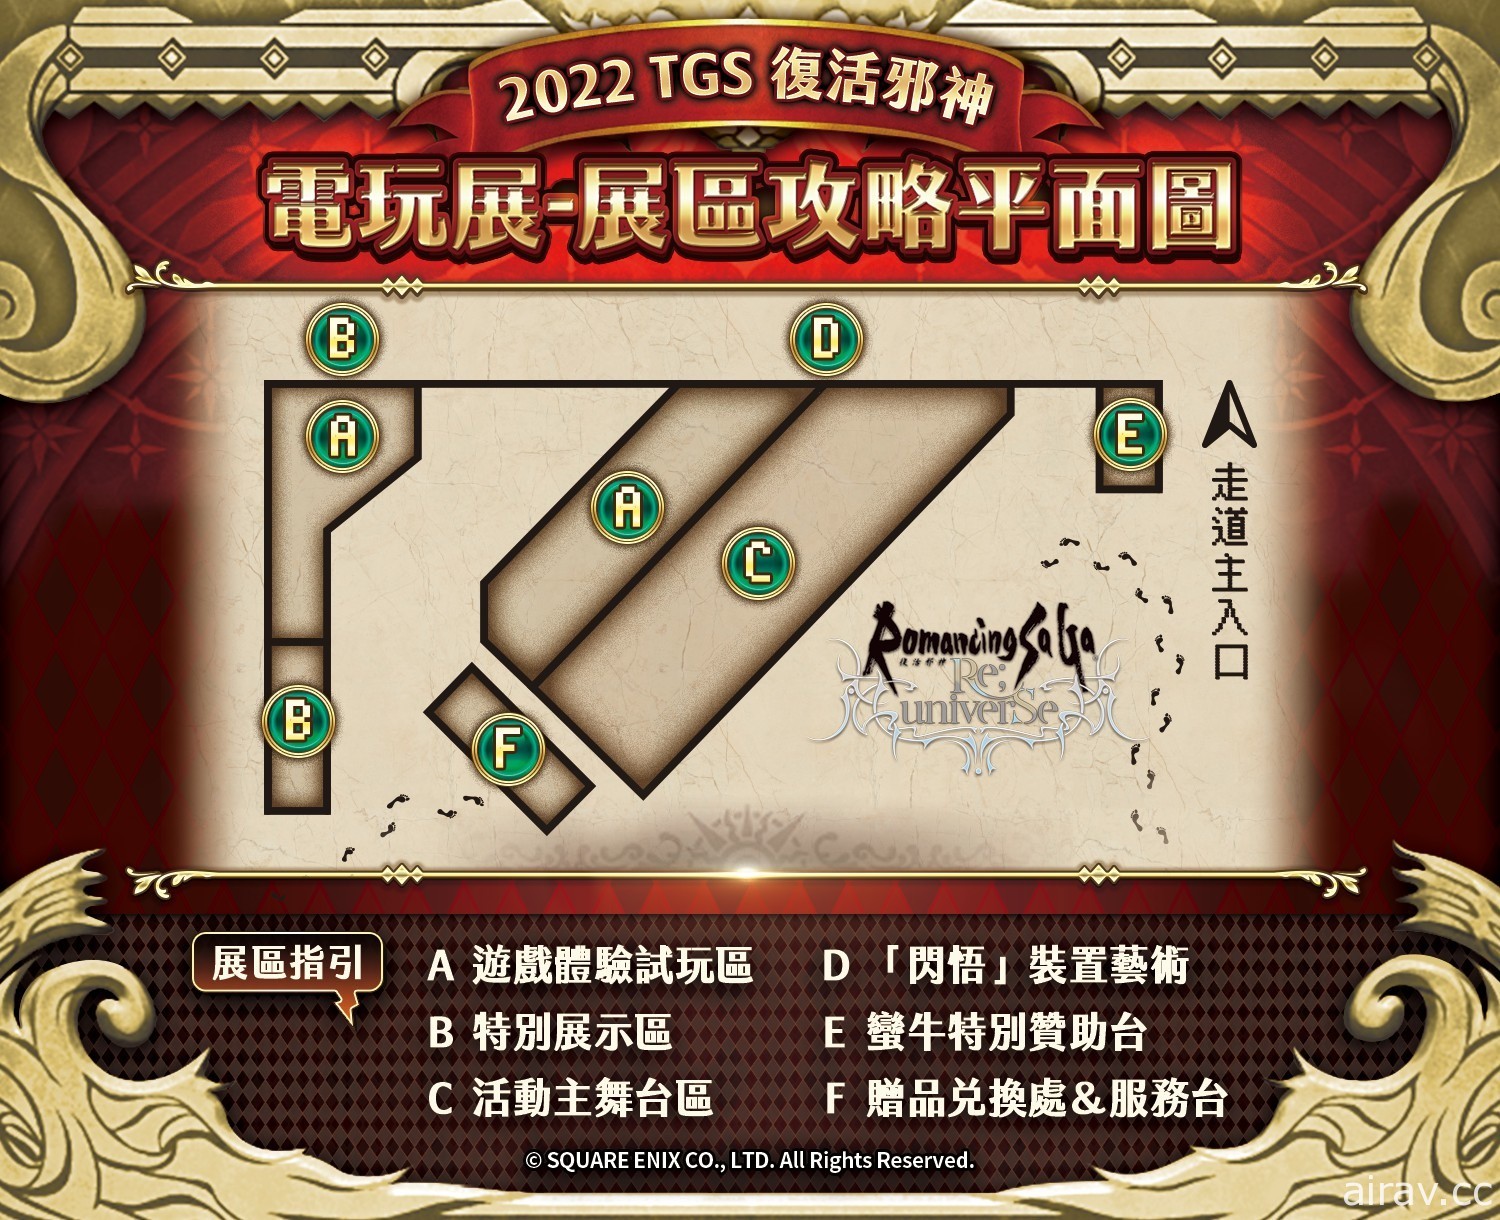 【TpGS 22】《复活邪神》系列首次参展“台北国际电玩展” 释出摊位资讯